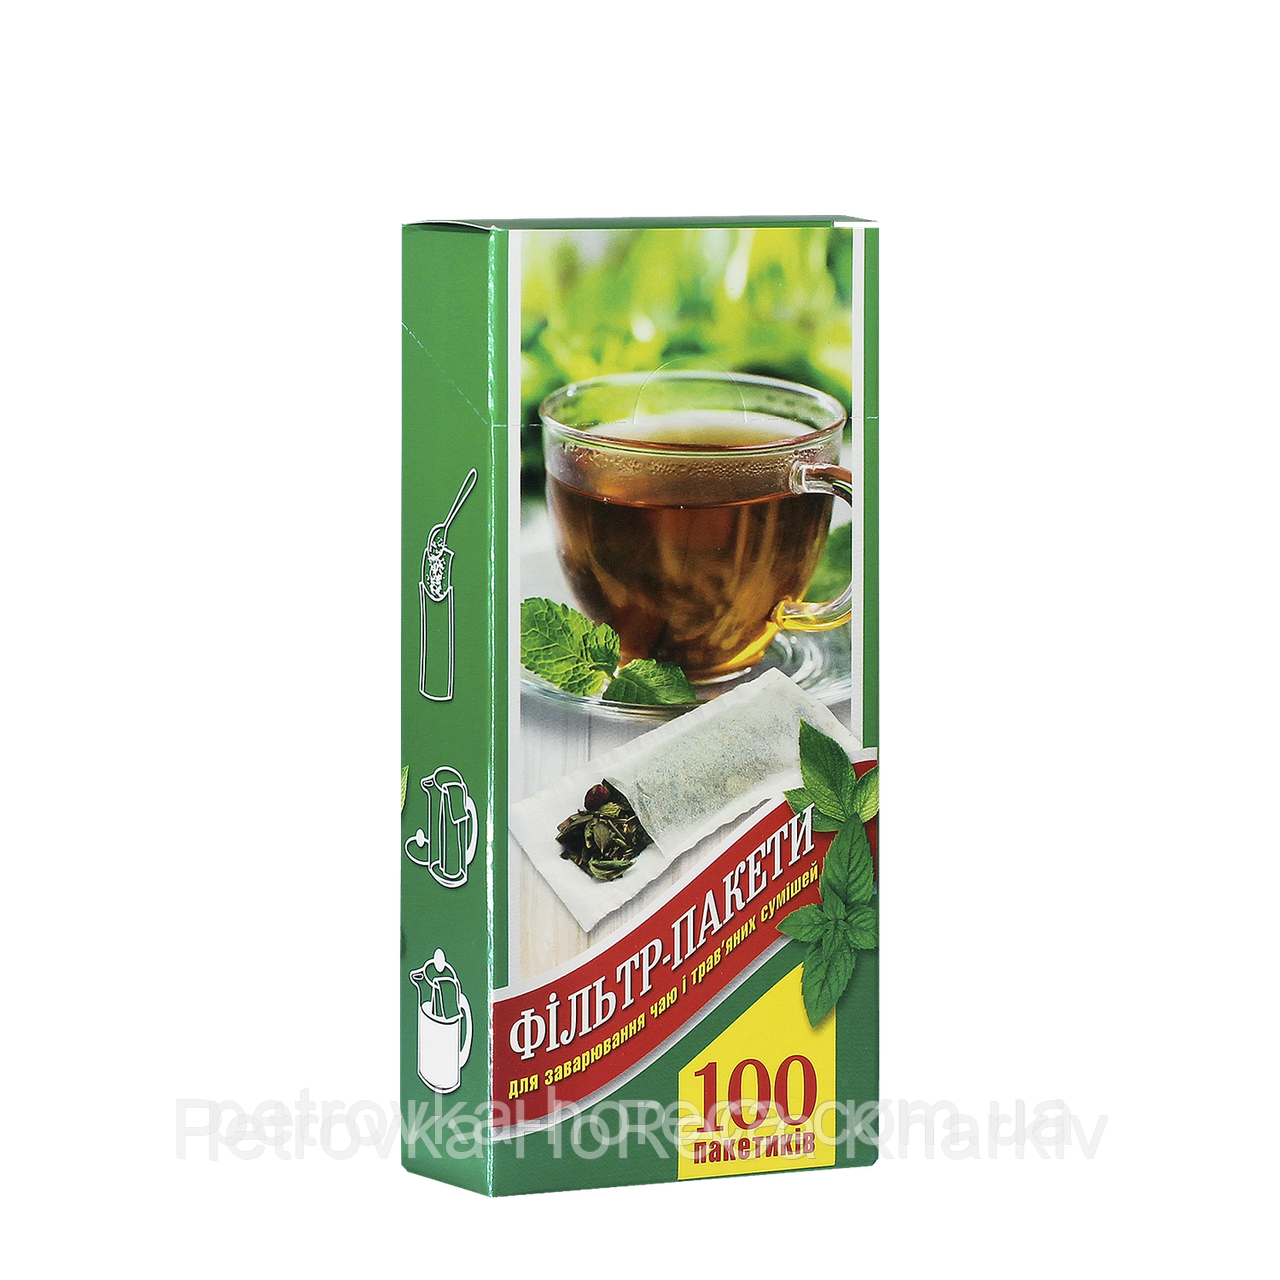 Фильтр пакет для чая L под стакан 100шт: продажа, цена в Харькове .